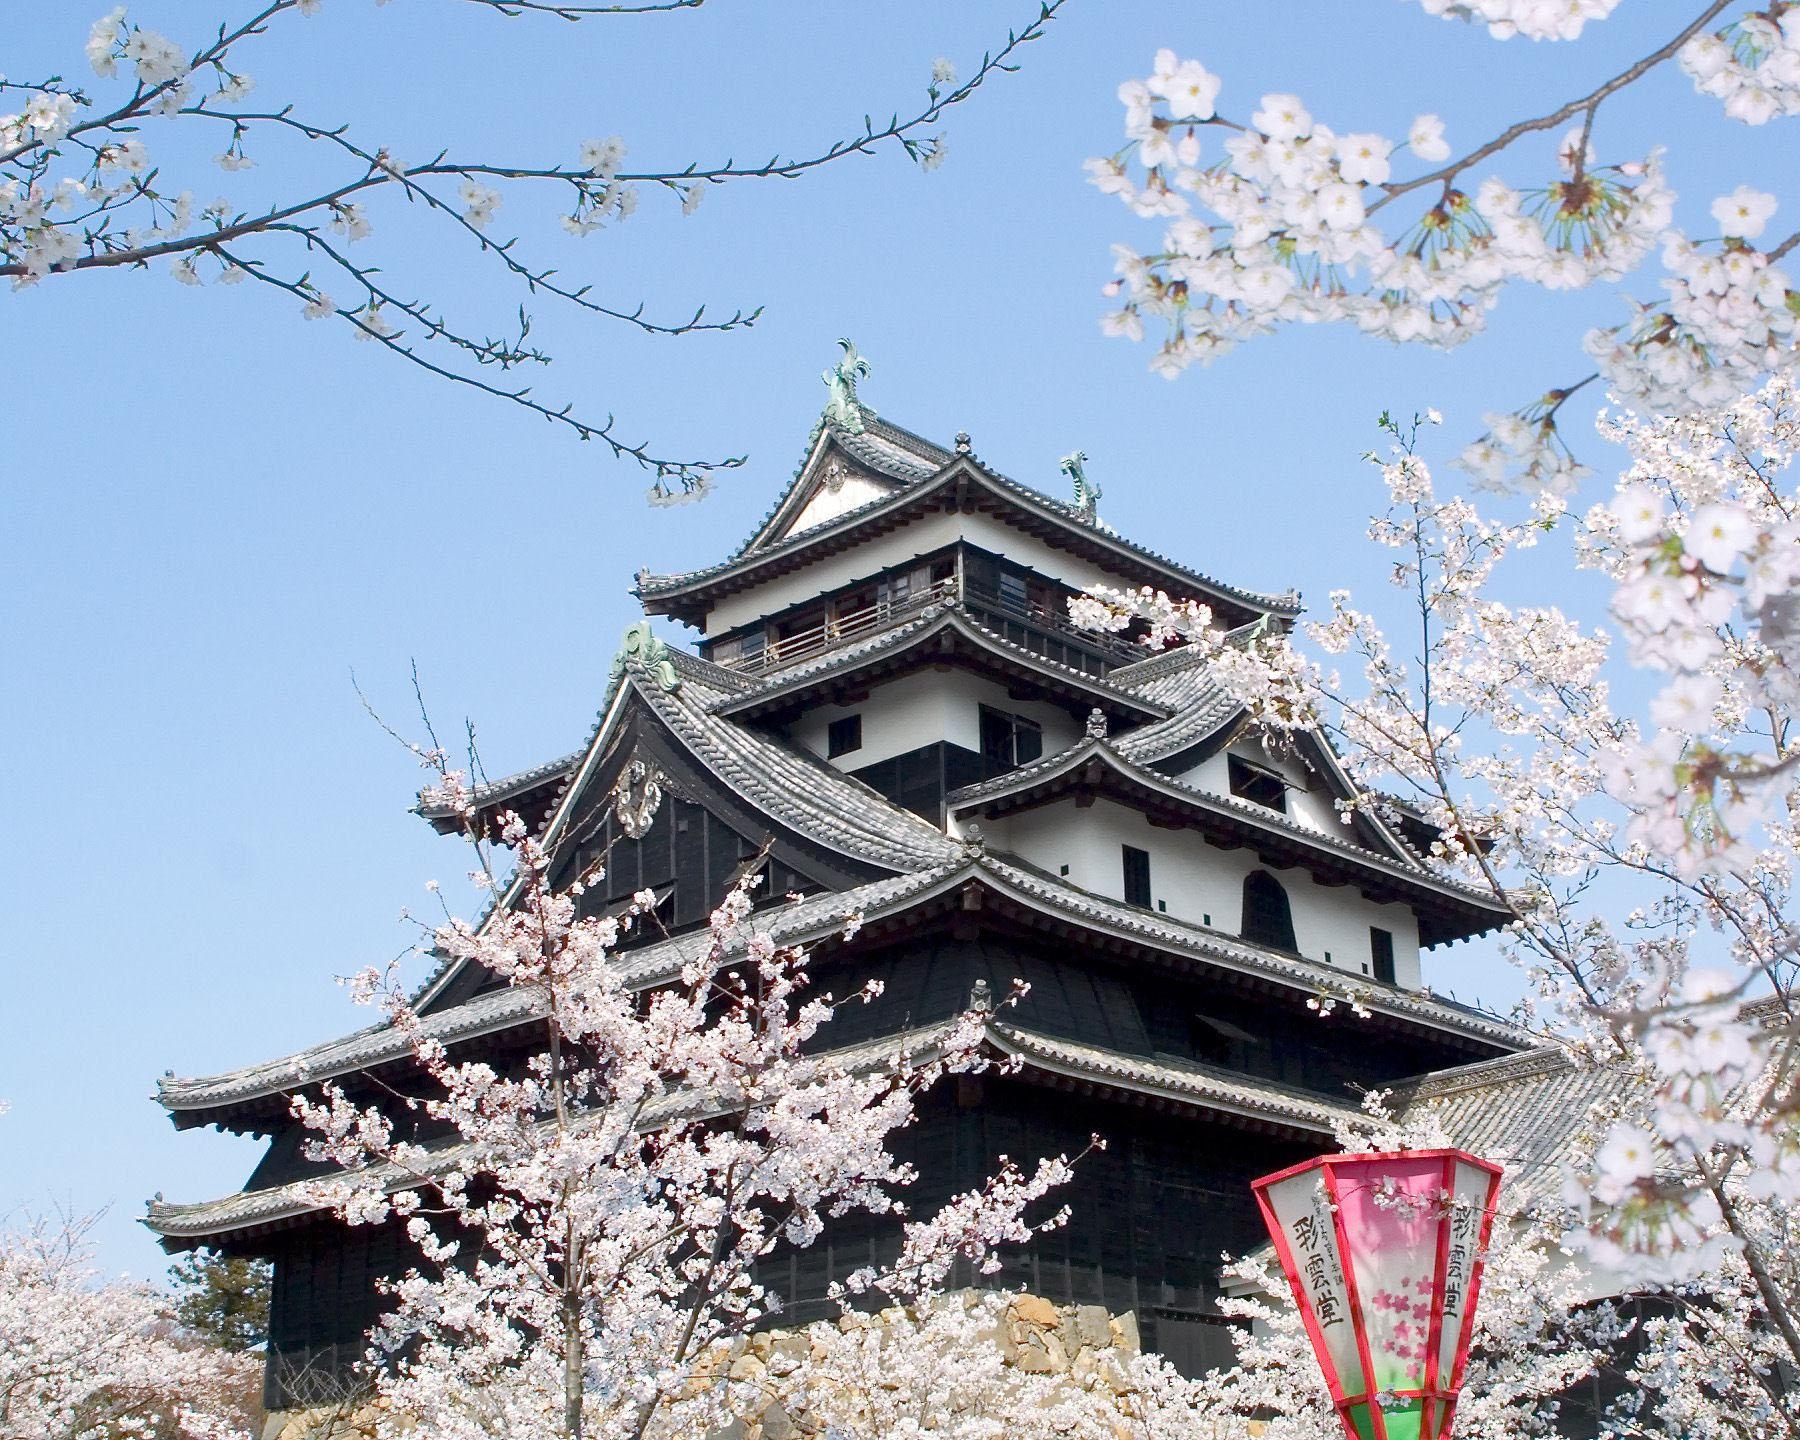 日本さくら名所100選にも選ばれた絶景、島根県の松江城山公園で桜が見頃は？